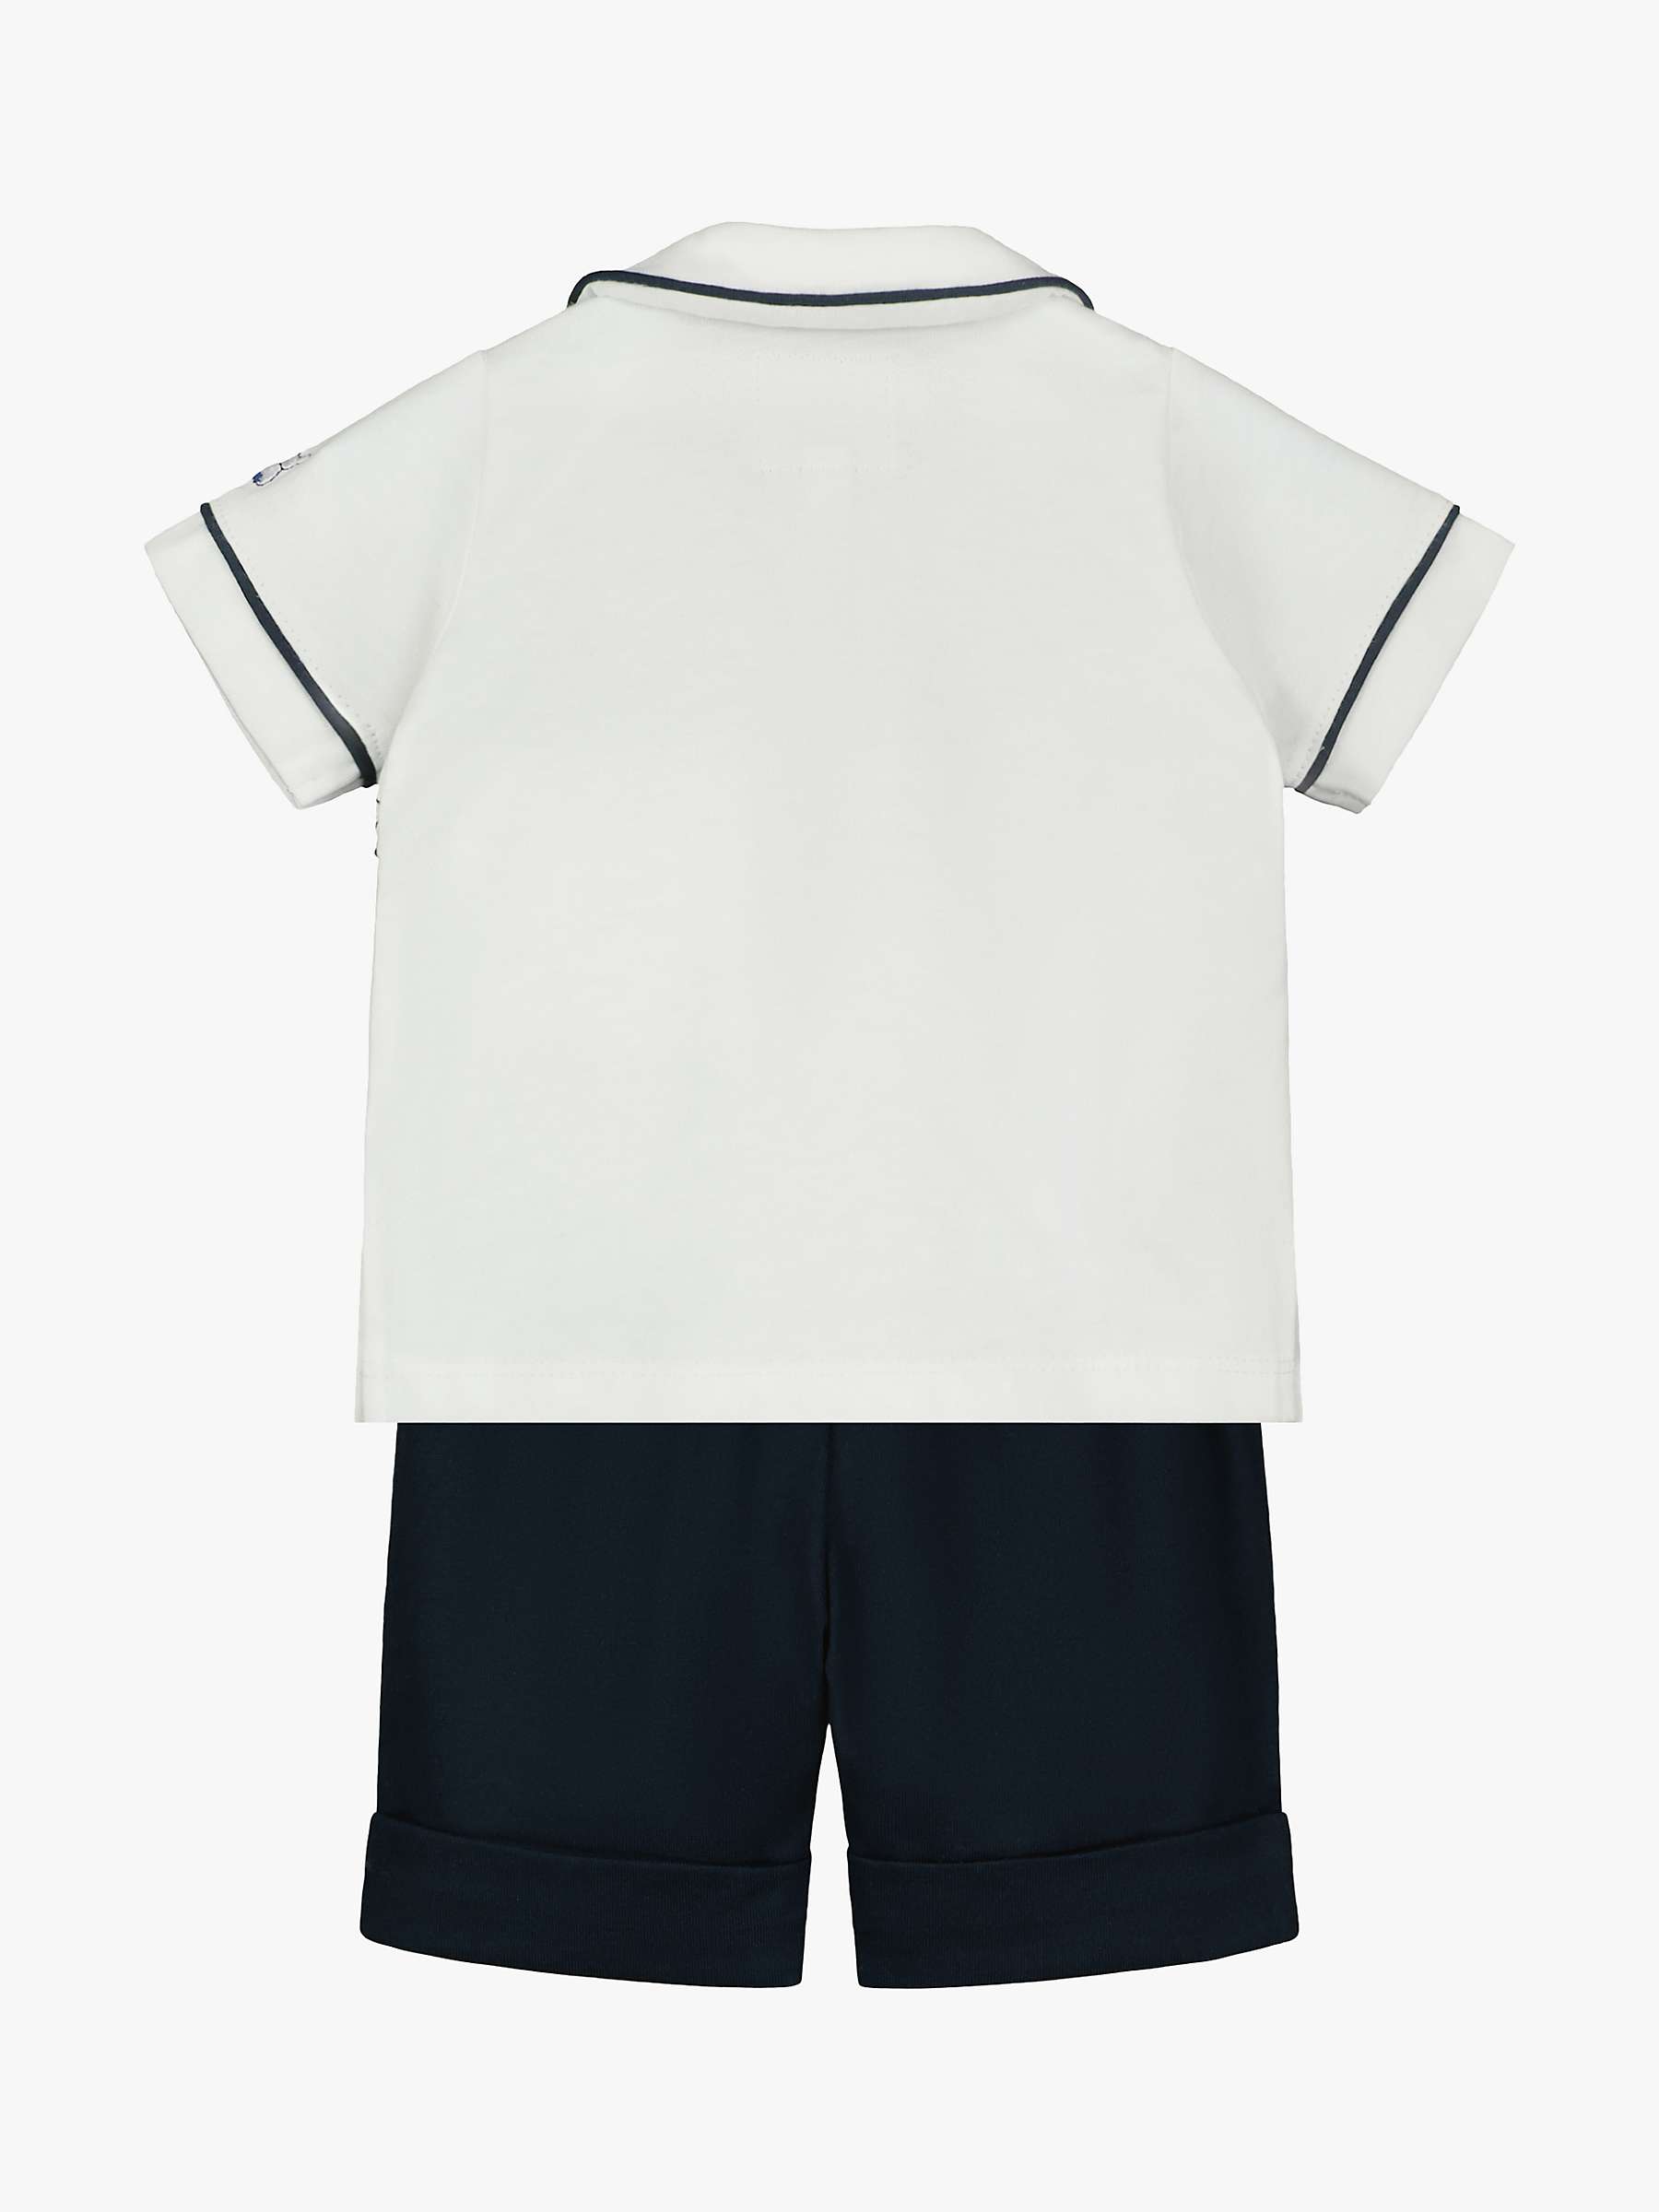 Buy Emile et Rose Baby Frank Top & Shorts Set, Navy/White Online at johnlewis.com